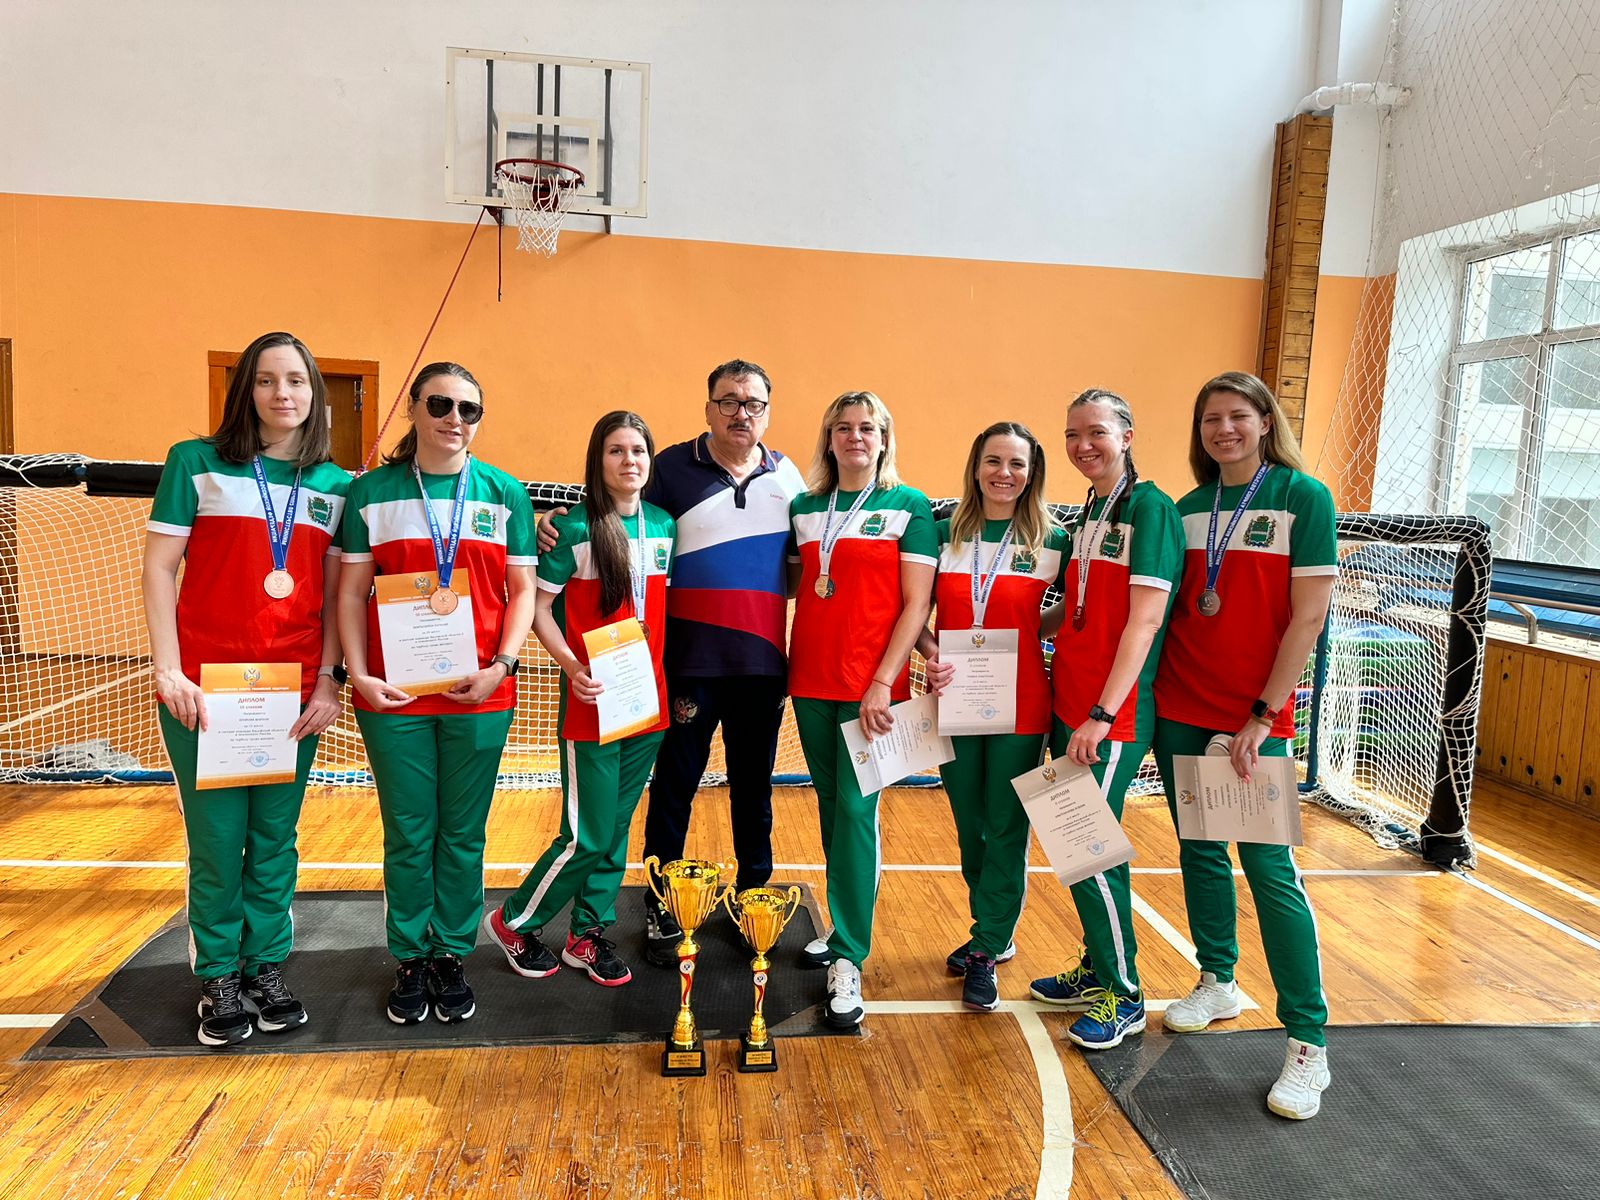 Подведены итоги чемпионата России по спорту слепых ( дисциплина - торбол В1, В2, В3).